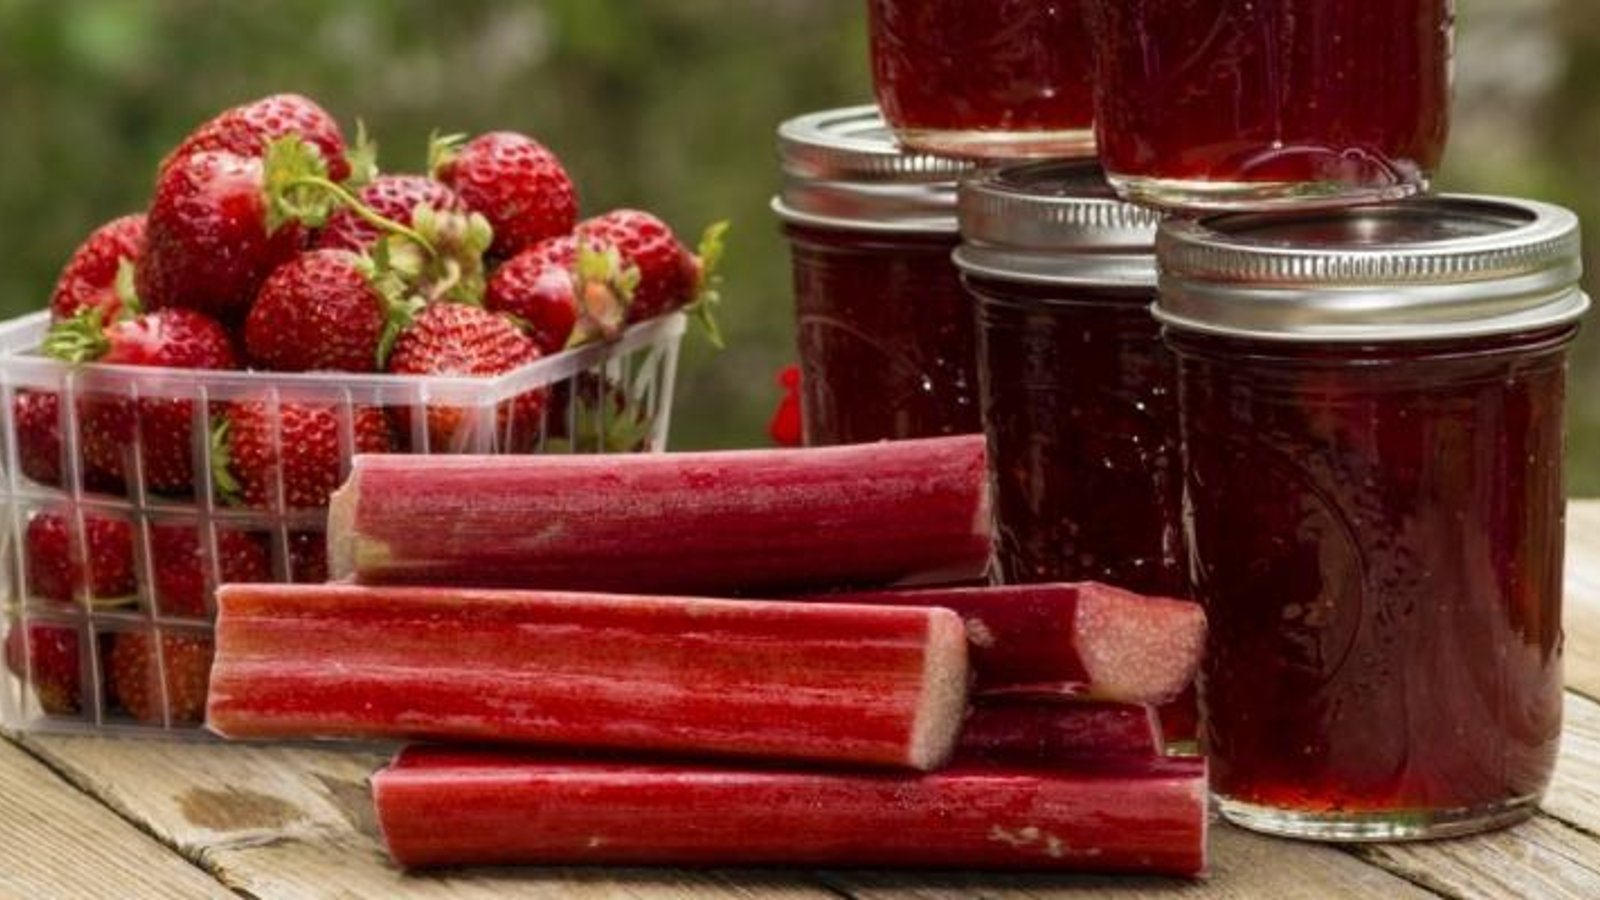  Confiture à la rhubarbe et aux fraises...en 3 ingrédients seulement